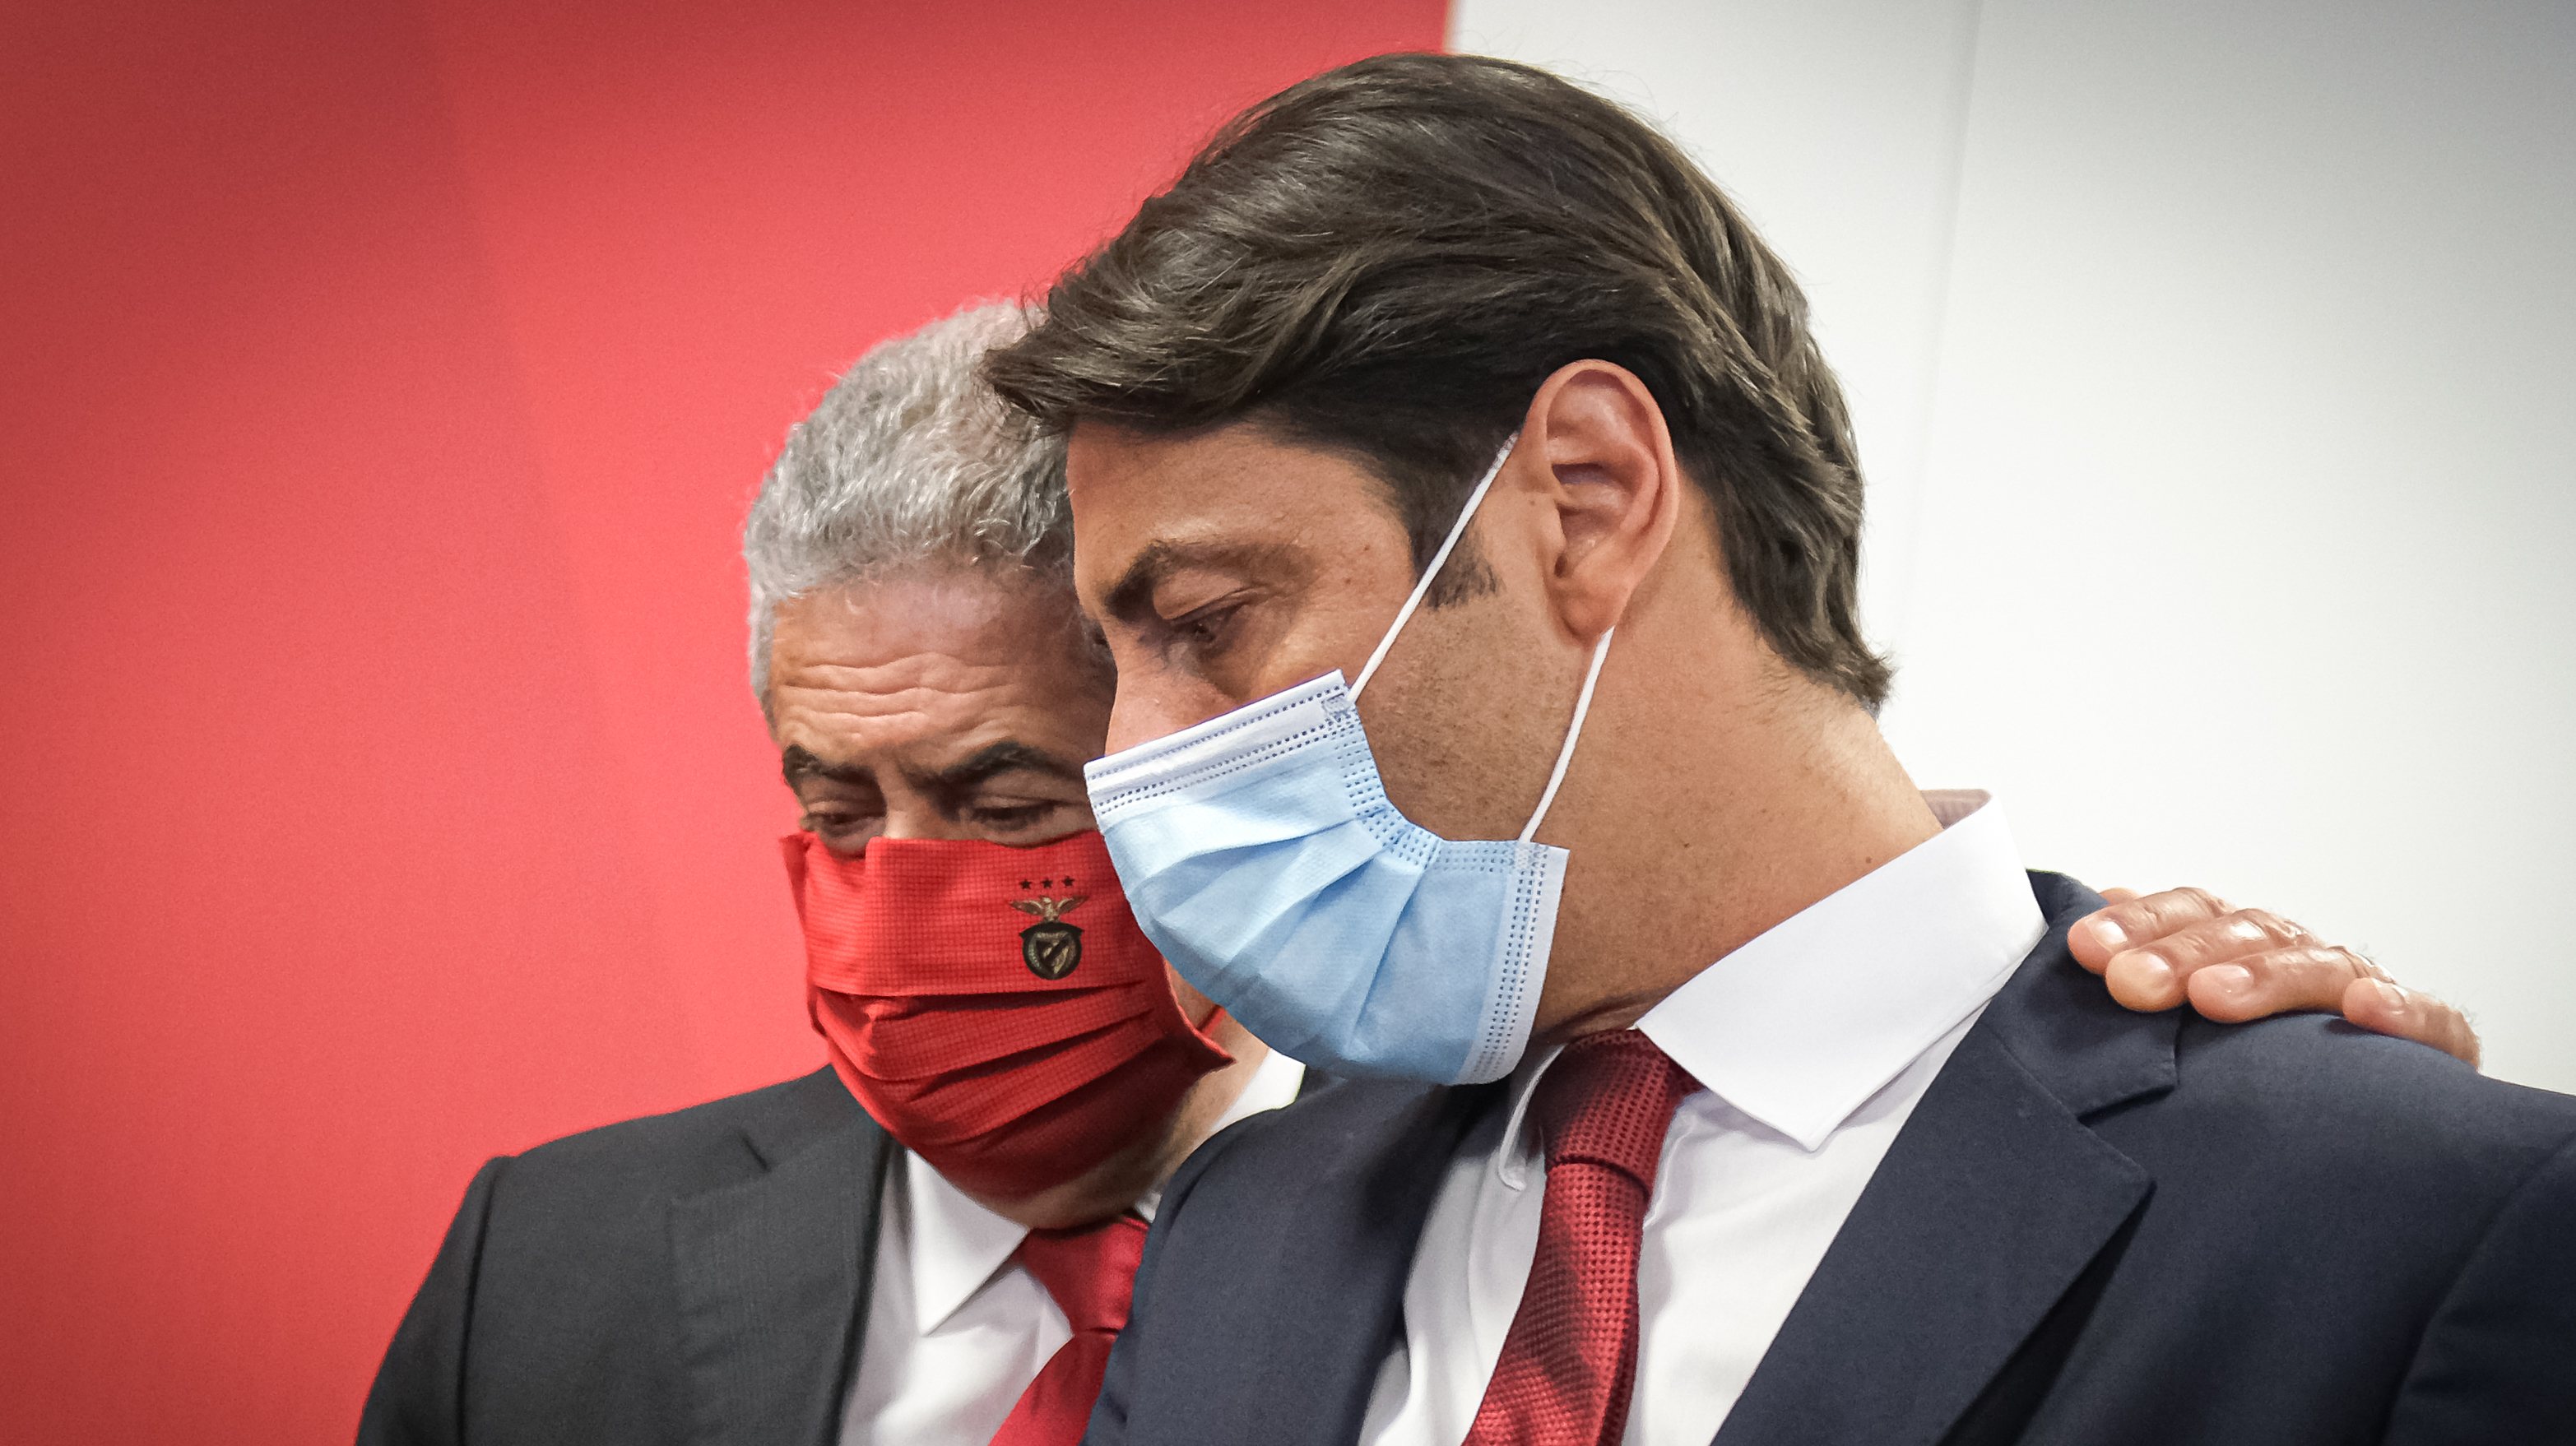 Rui Costa entrou pela primeira vez nos órgão sociais do Benfica nas eleições de 2020, passando a ser o número 2 da Direção